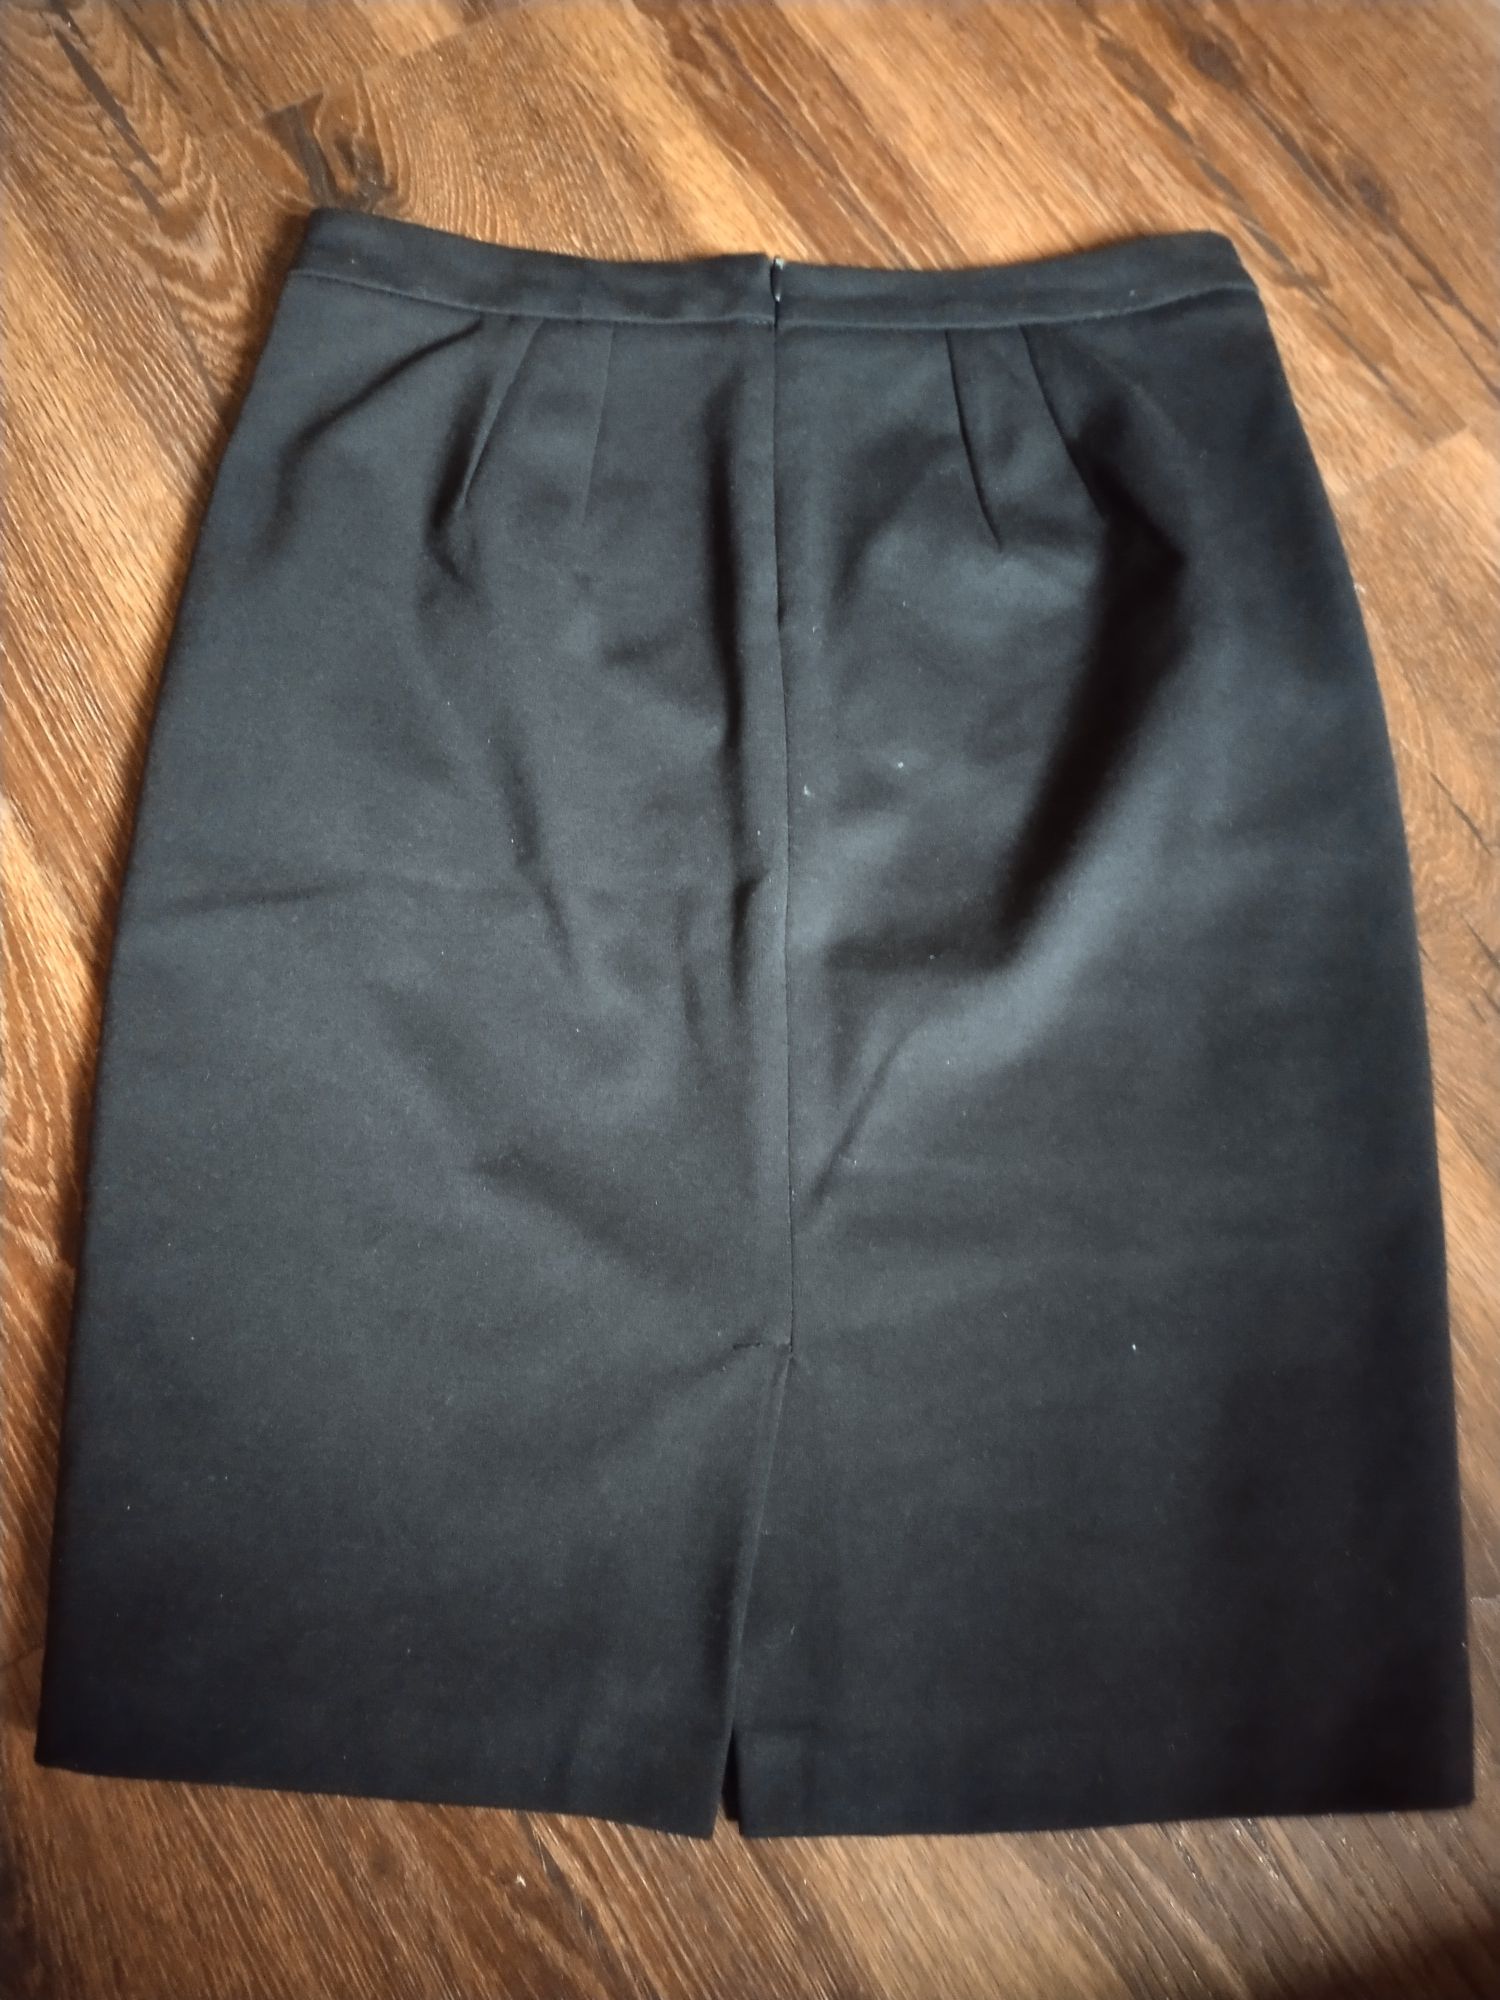 Elegancka ołówkowa spódnica, Reserved, rozmiar 34. Czarno kremowa